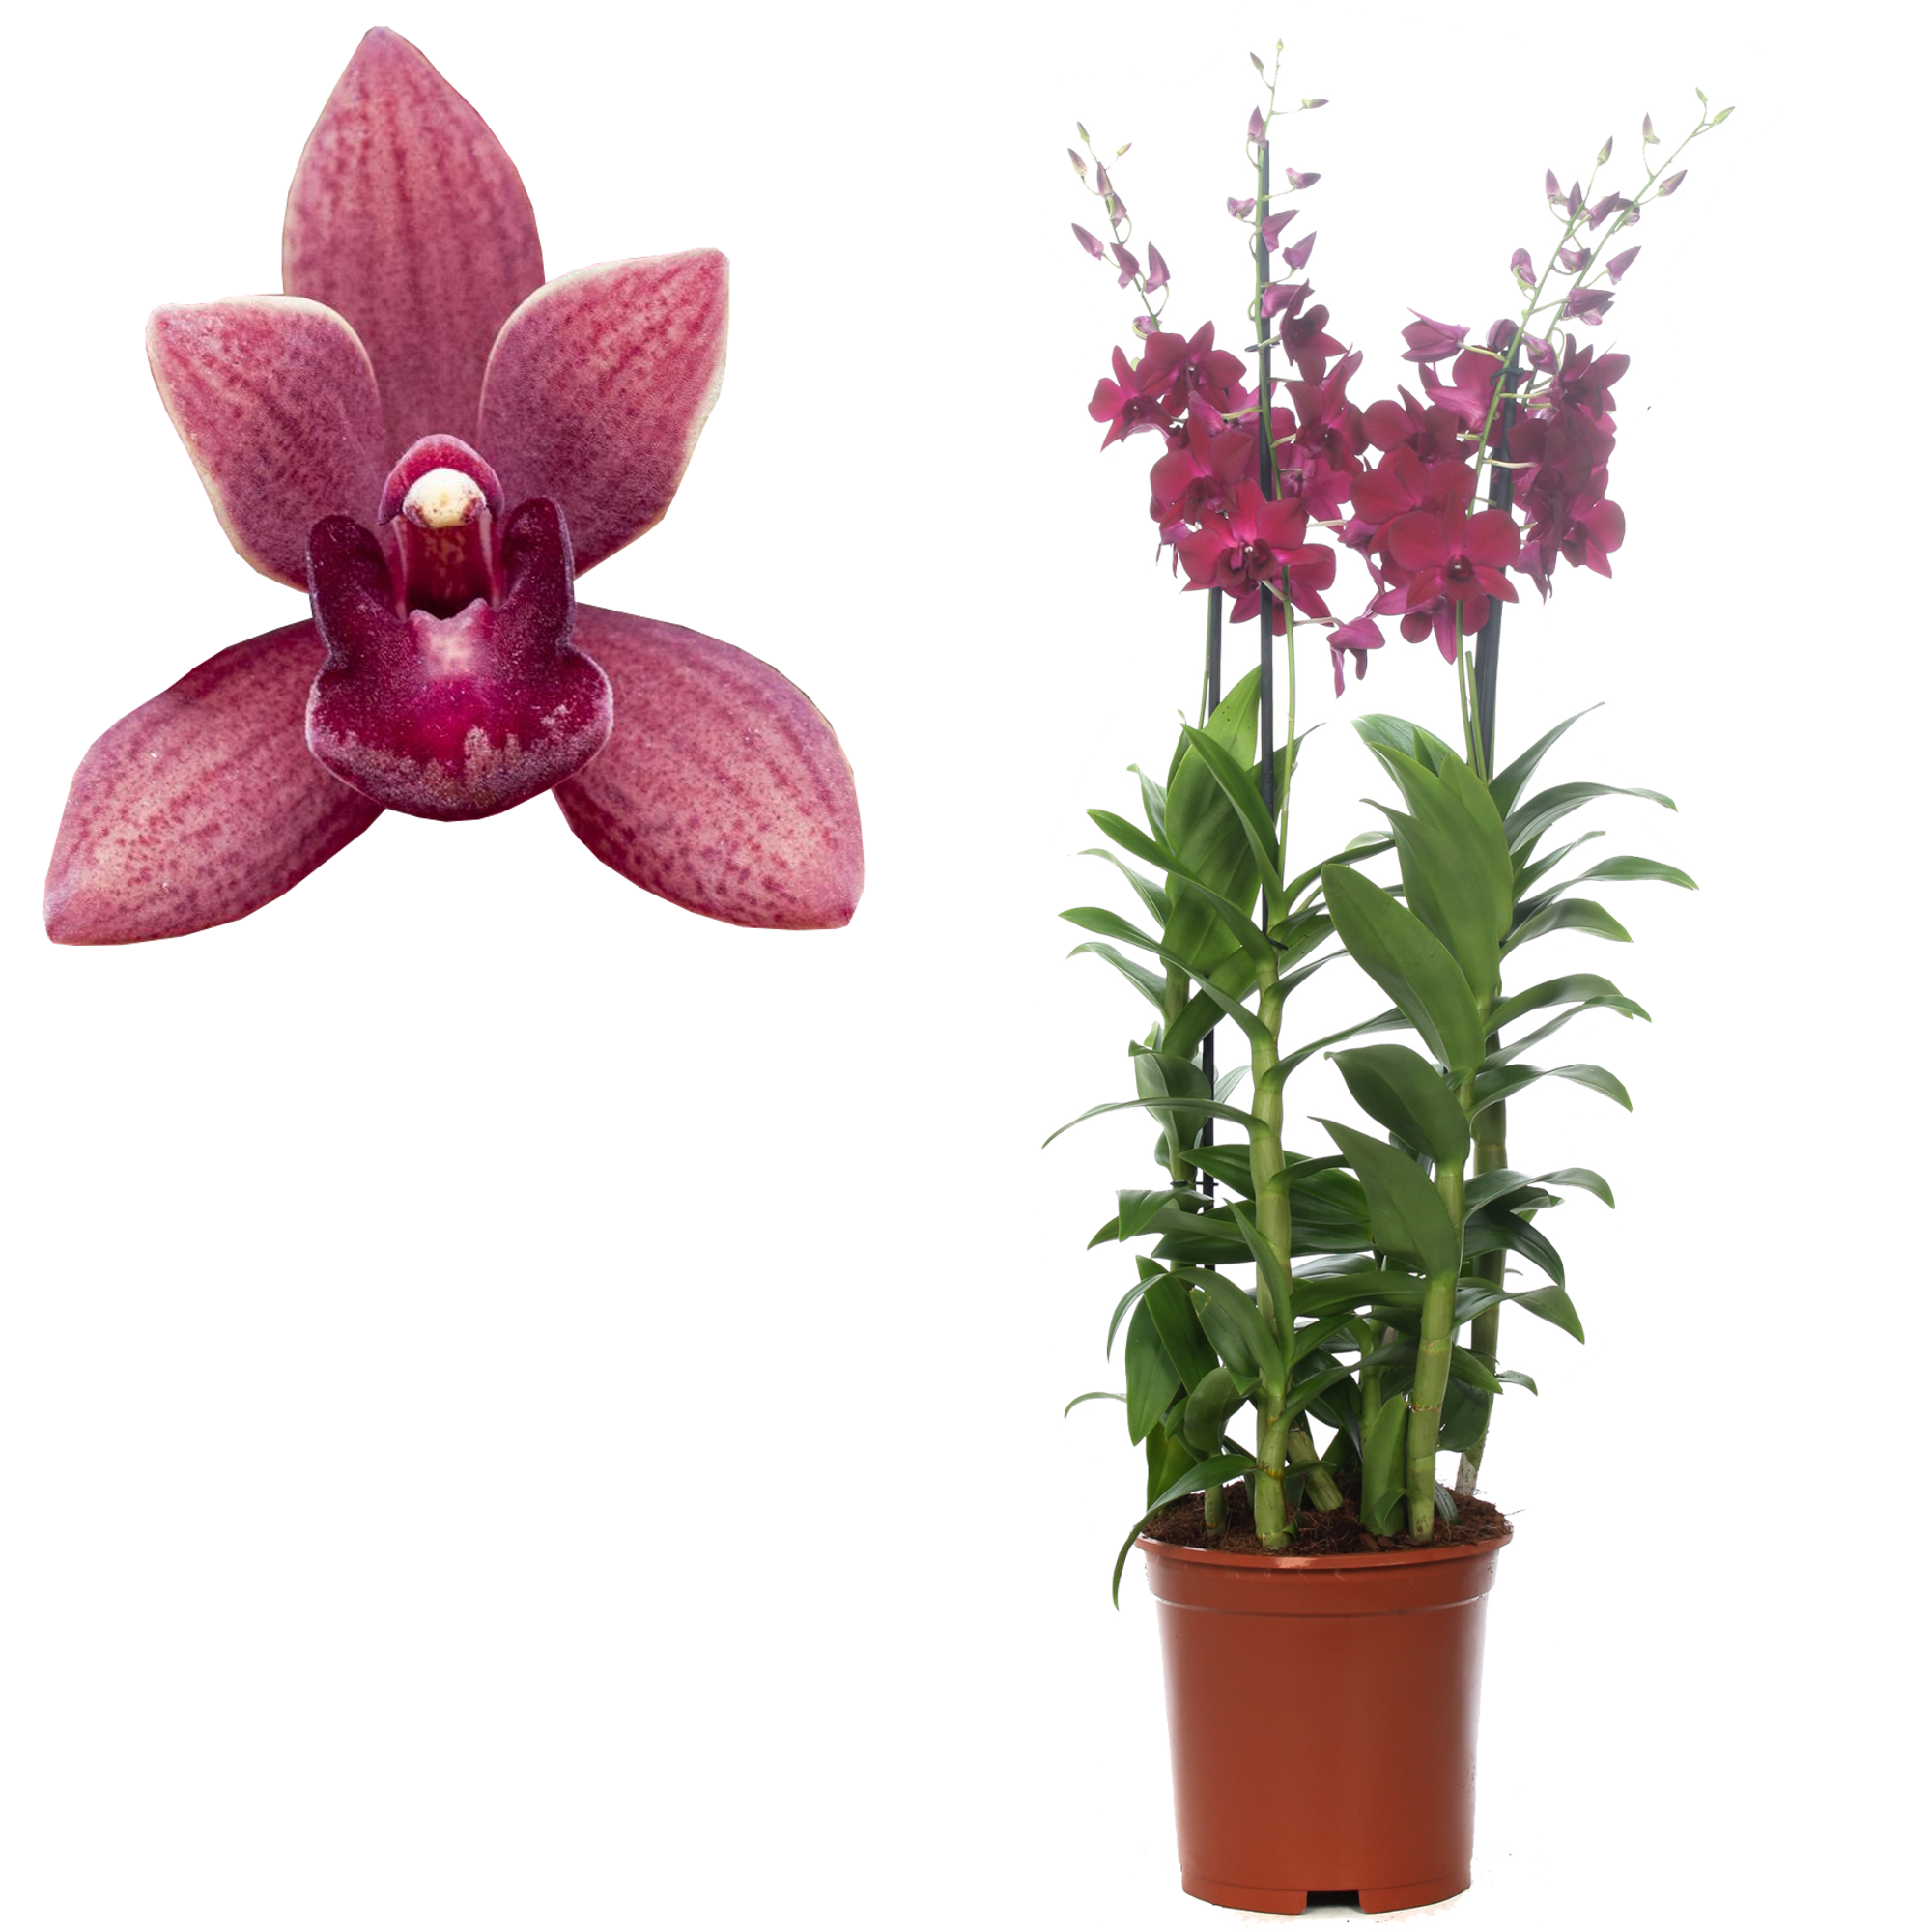 Dendrobium-Orchidee 4 Rispen violett, 21 cm Topf + product picture